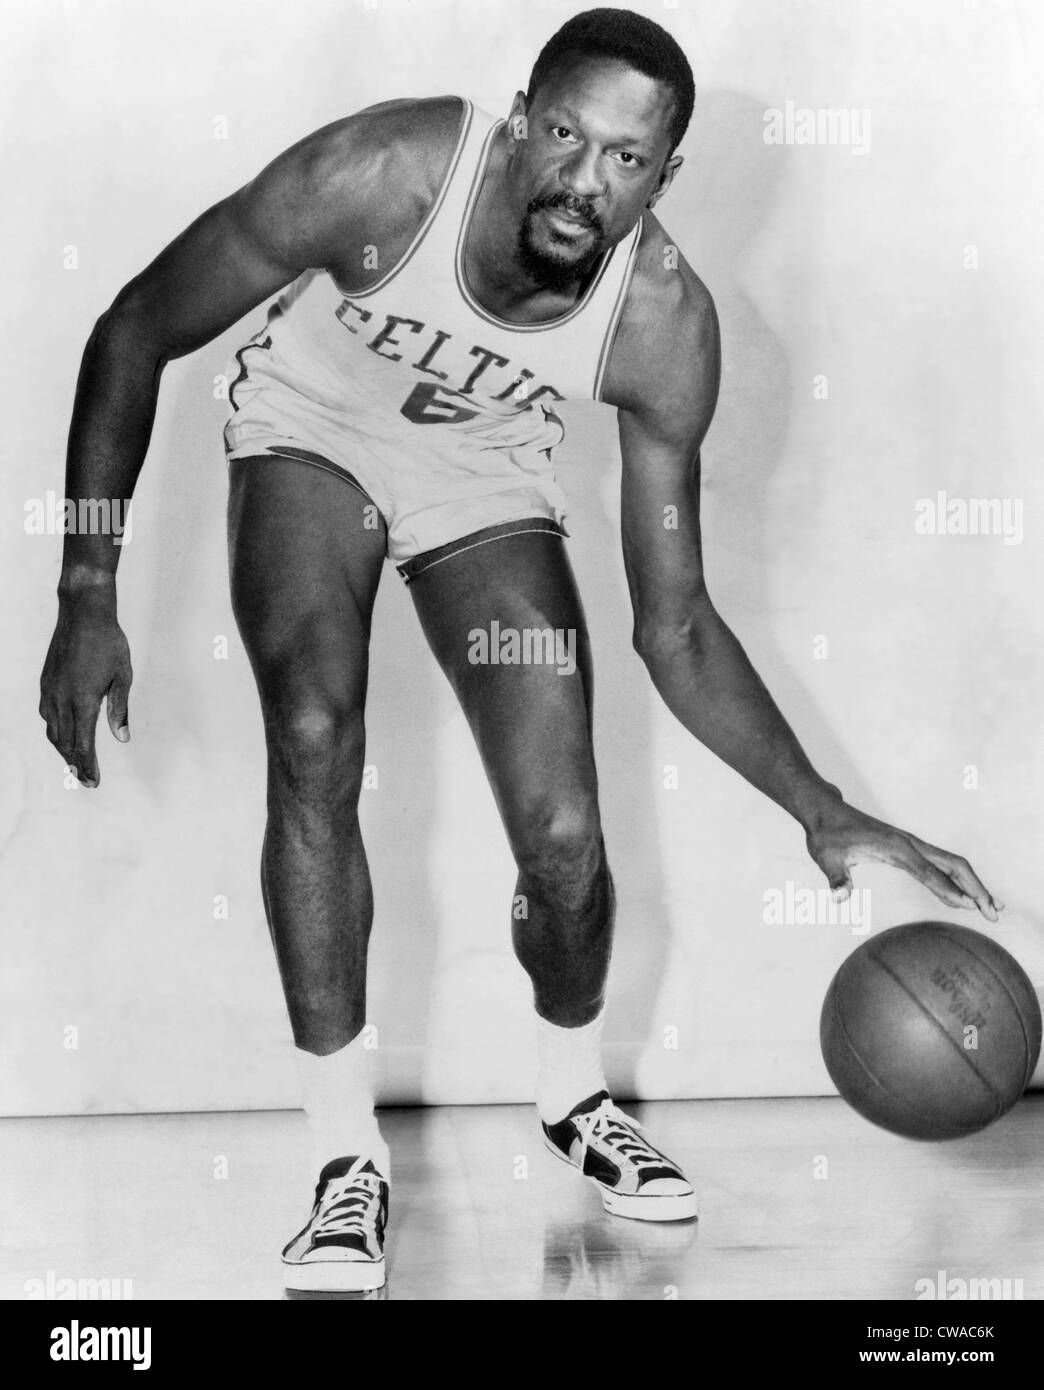 Bill Russell, joueur américain de basket-ball qui a joué pour les Boston Celtics, vers 1960. Avec la permission de : Archives CSU/Everett Banque D'Images